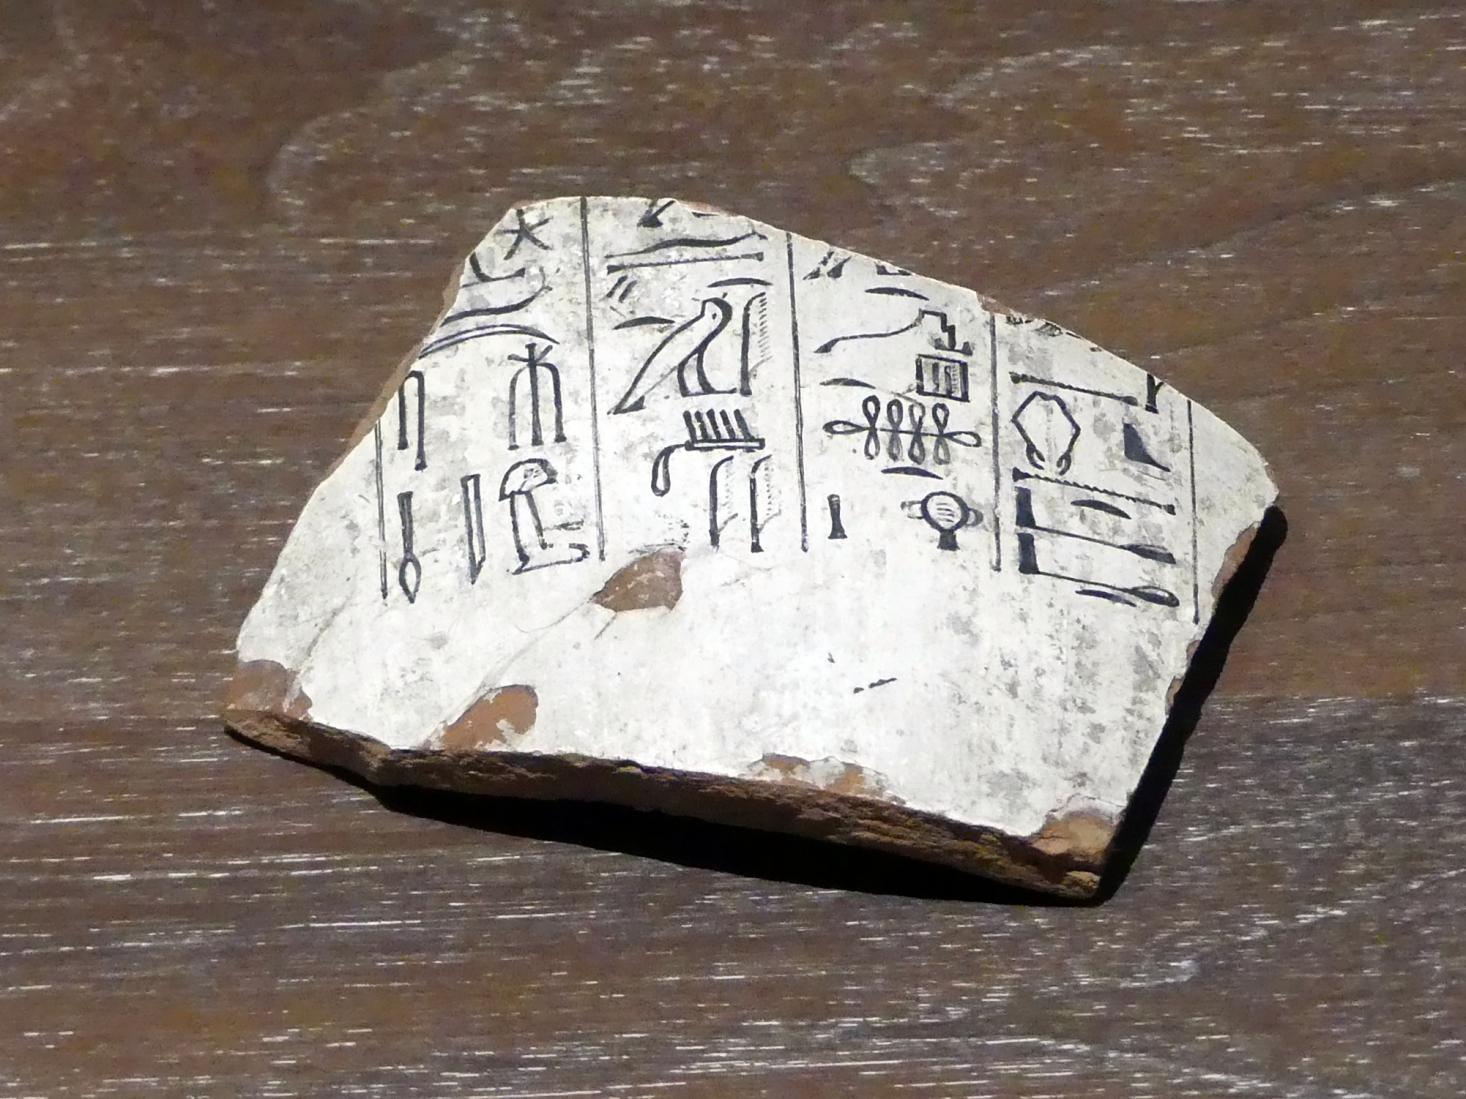 Teil einer Kanope (Eingeweidekrug) mit Gebet in hieroglyphischer Schreibung, 19. Dynastie, 953 - 887 v. Chr., 1200 v. Chr.